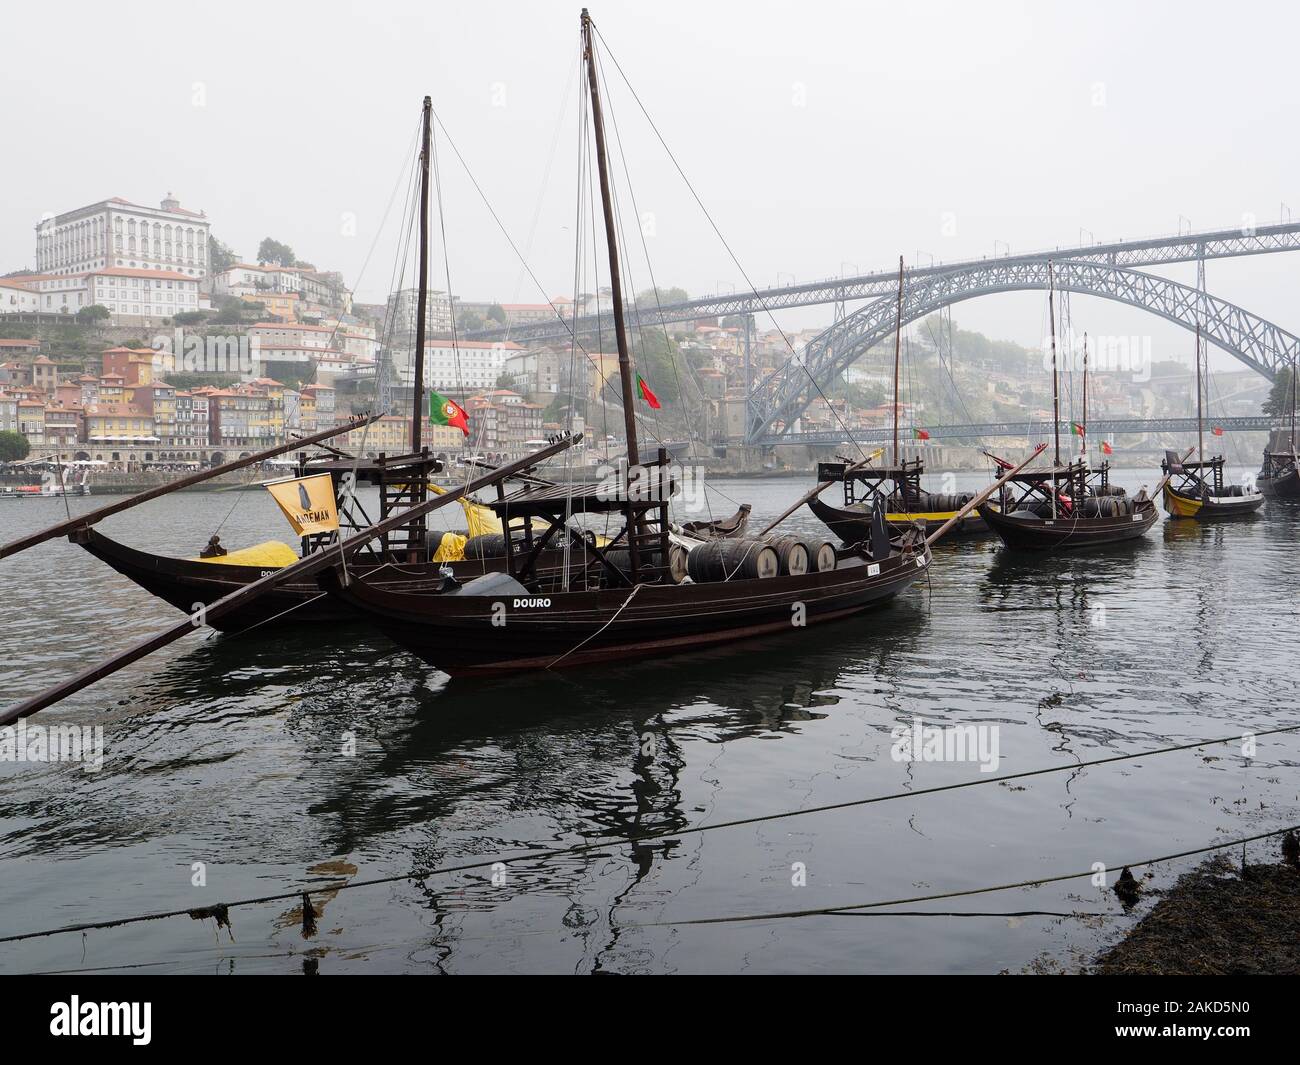 In legno classico vino di Porto barche nel fiume Douro nel centro della città di Porto, Portogallo Foto Stock